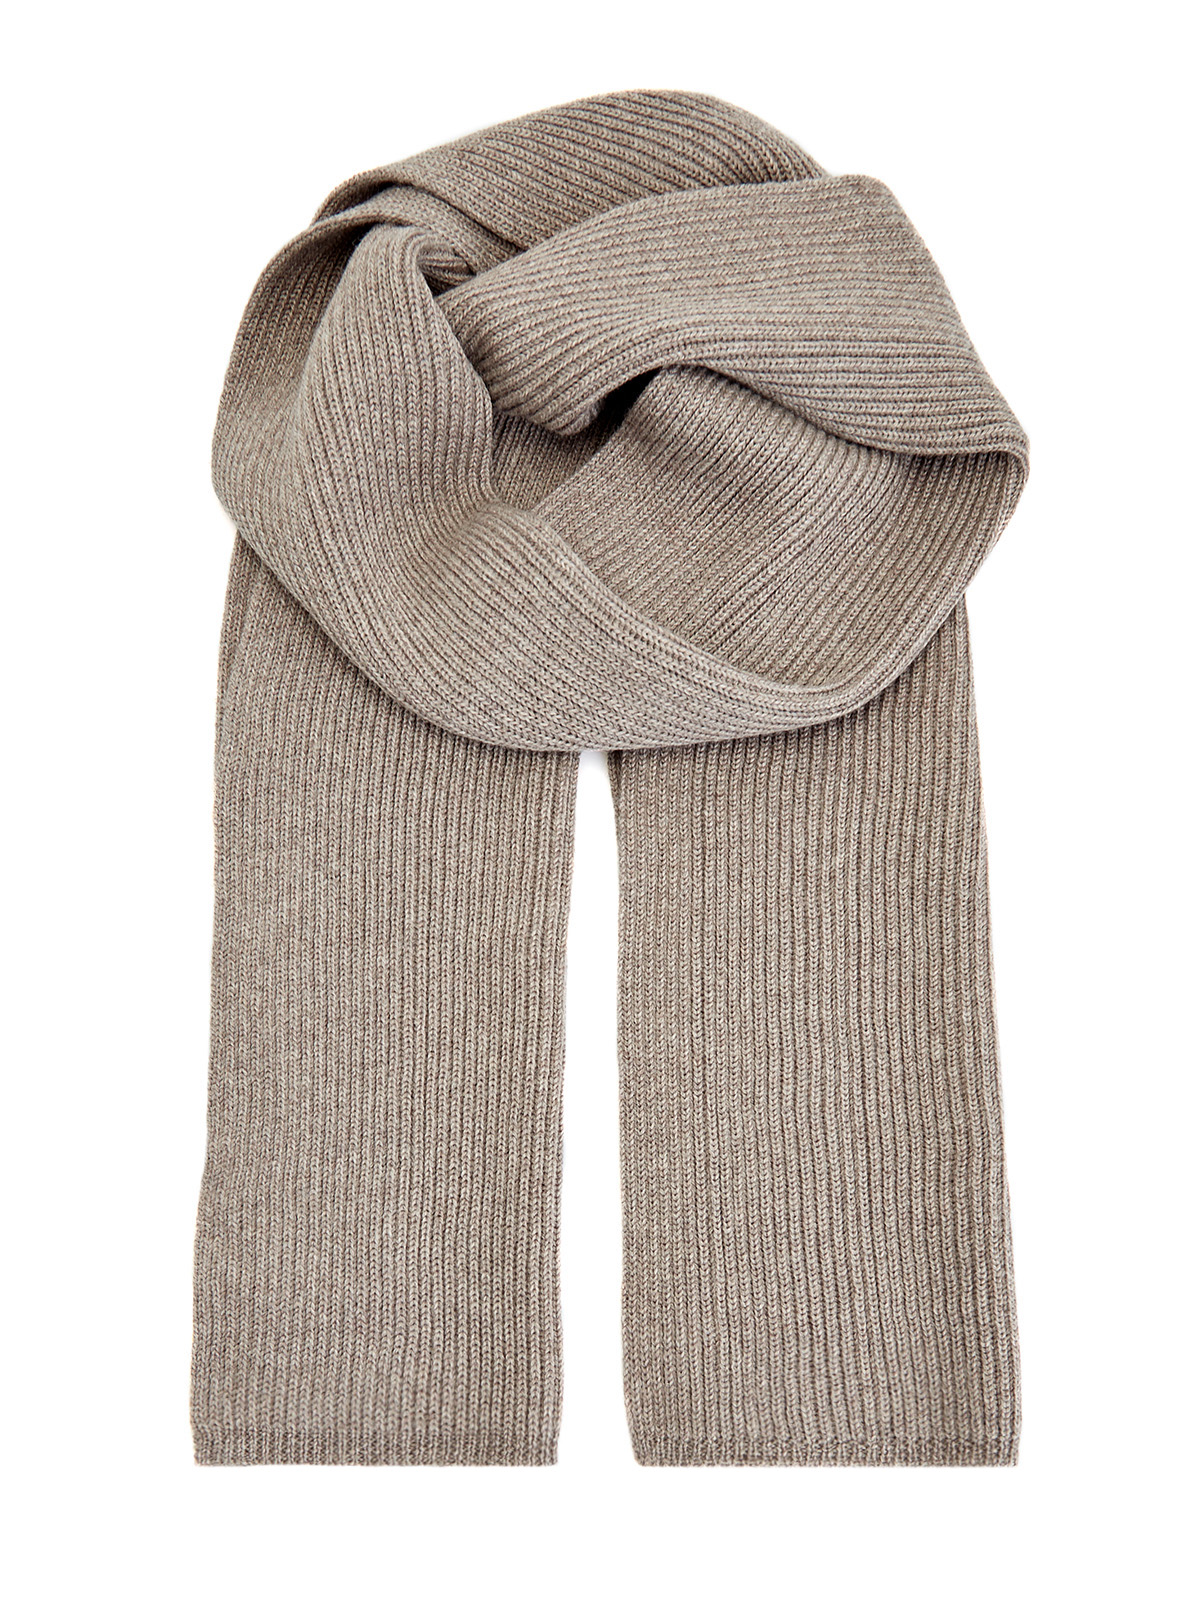 Лаконичный шарф фактурной вязки из шерсти CANALI, цвет бежевый, размер 40;42;44